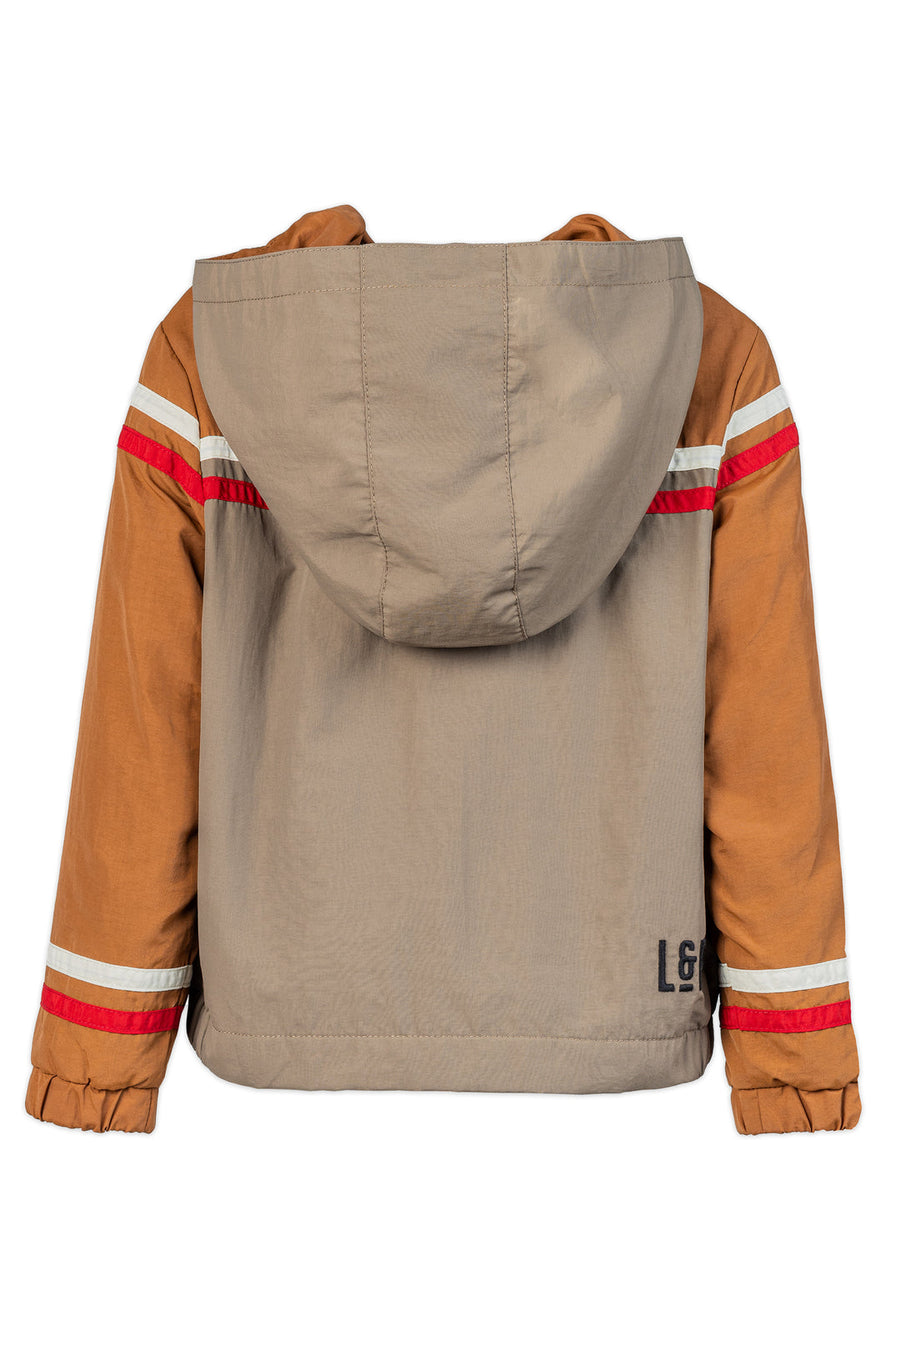 Fleece Lined outwear jacket [123] [Kids] (Valky 1.0)